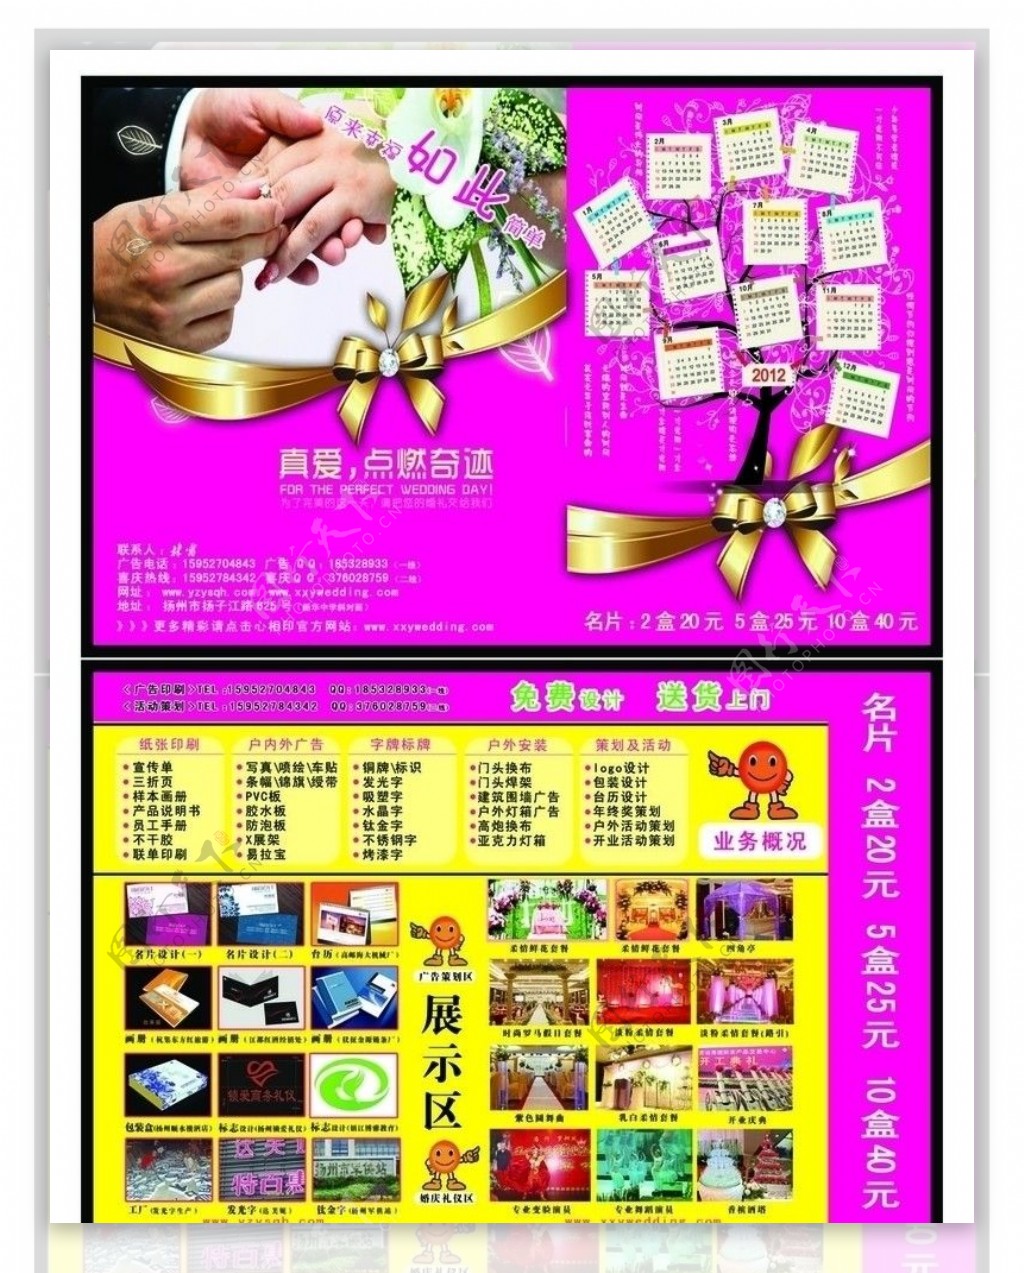 扬州优视企划传媒宣传单图片